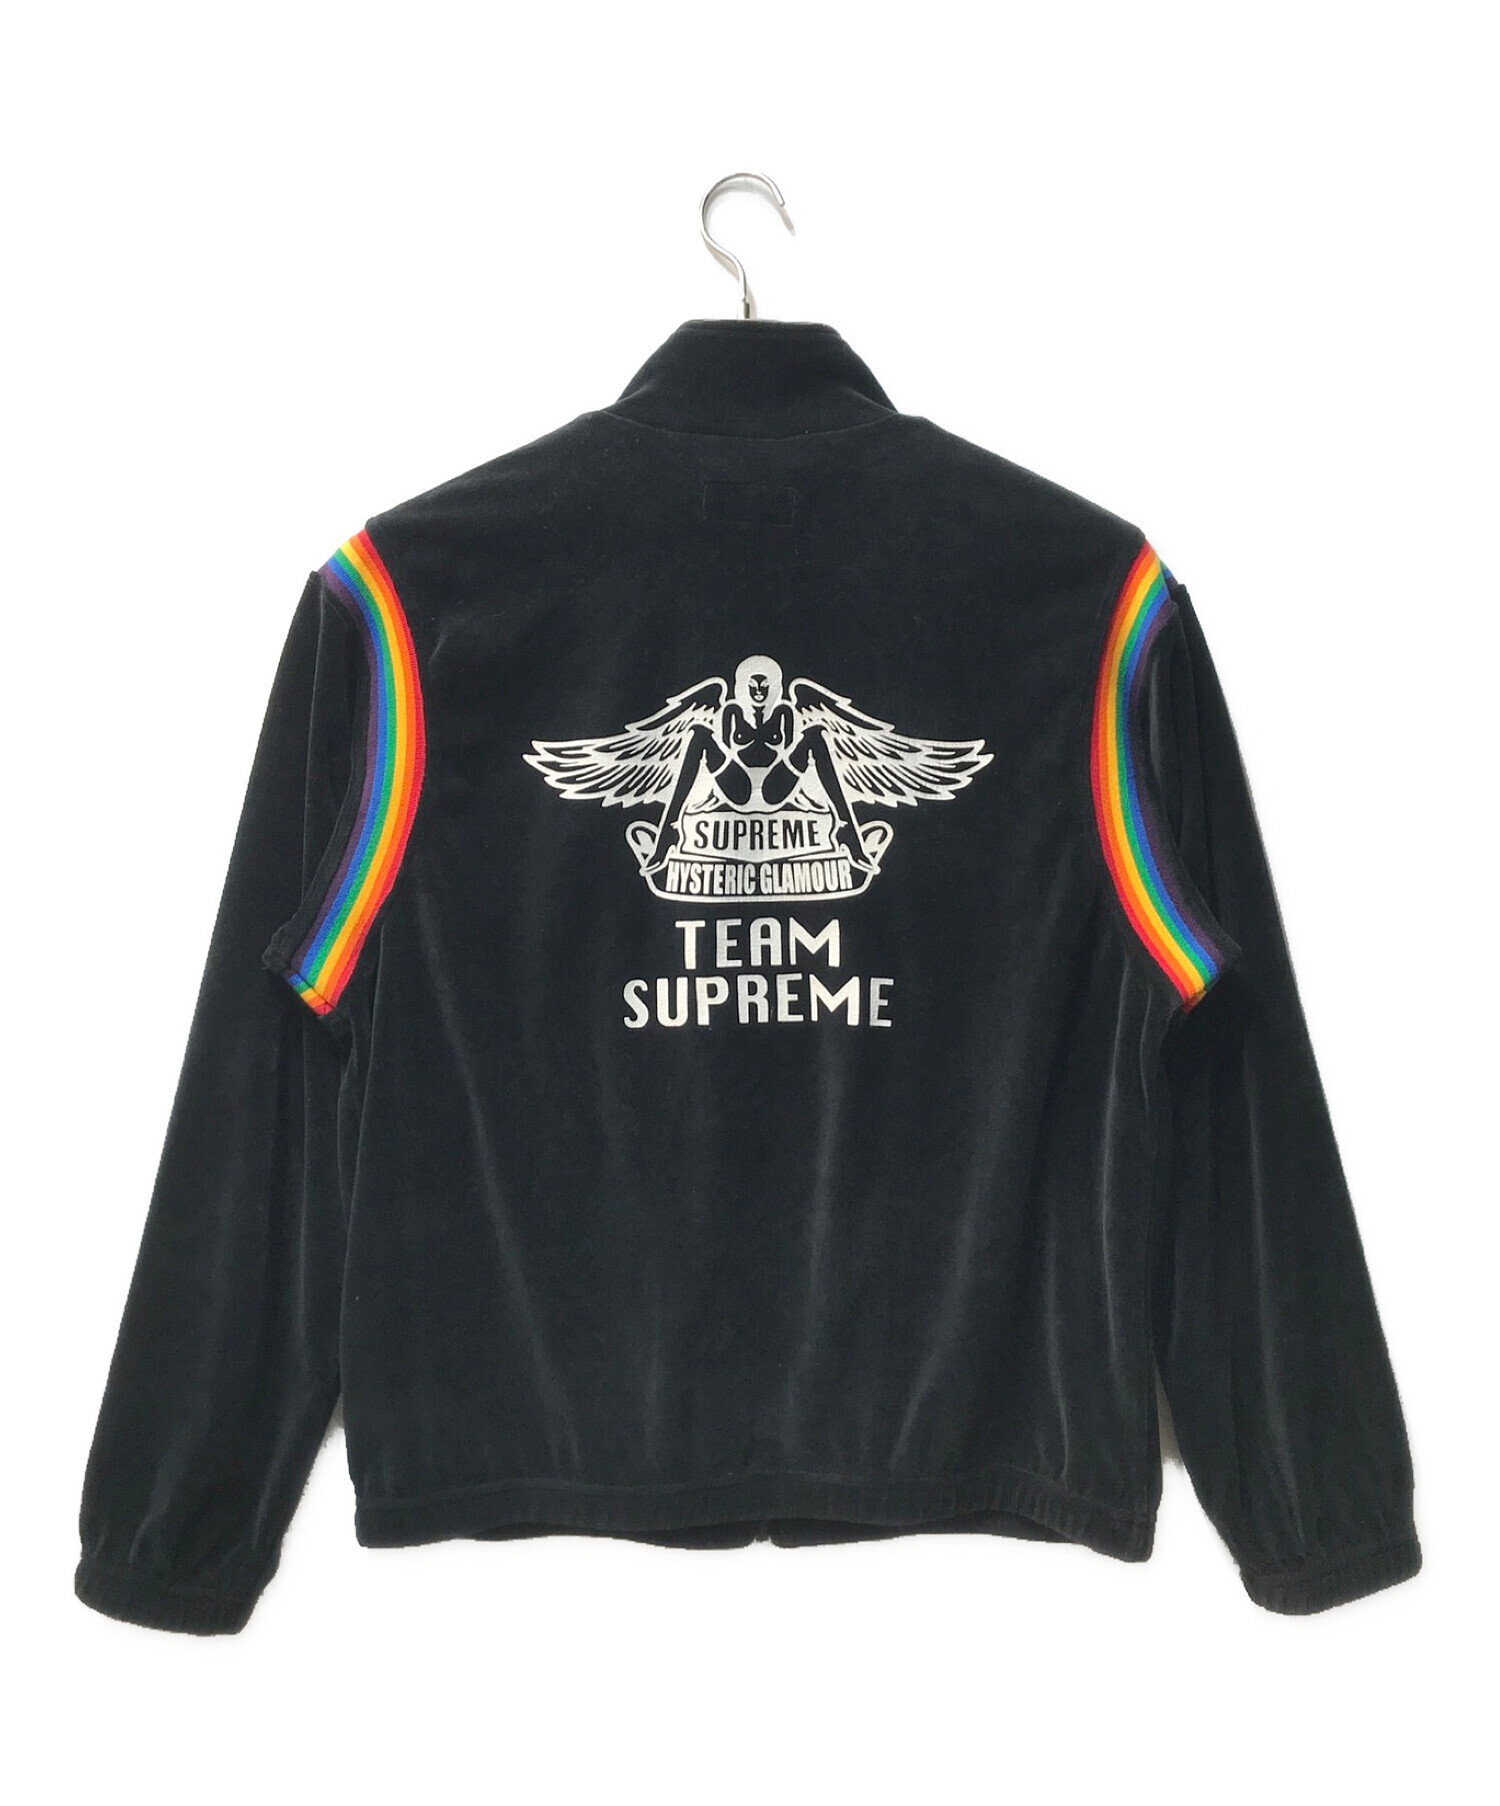 Supreme (シュプリーム) Hysteric Glamour (ヒステリックグラマー) Velour Track Jacket ブラック  サイズ:L